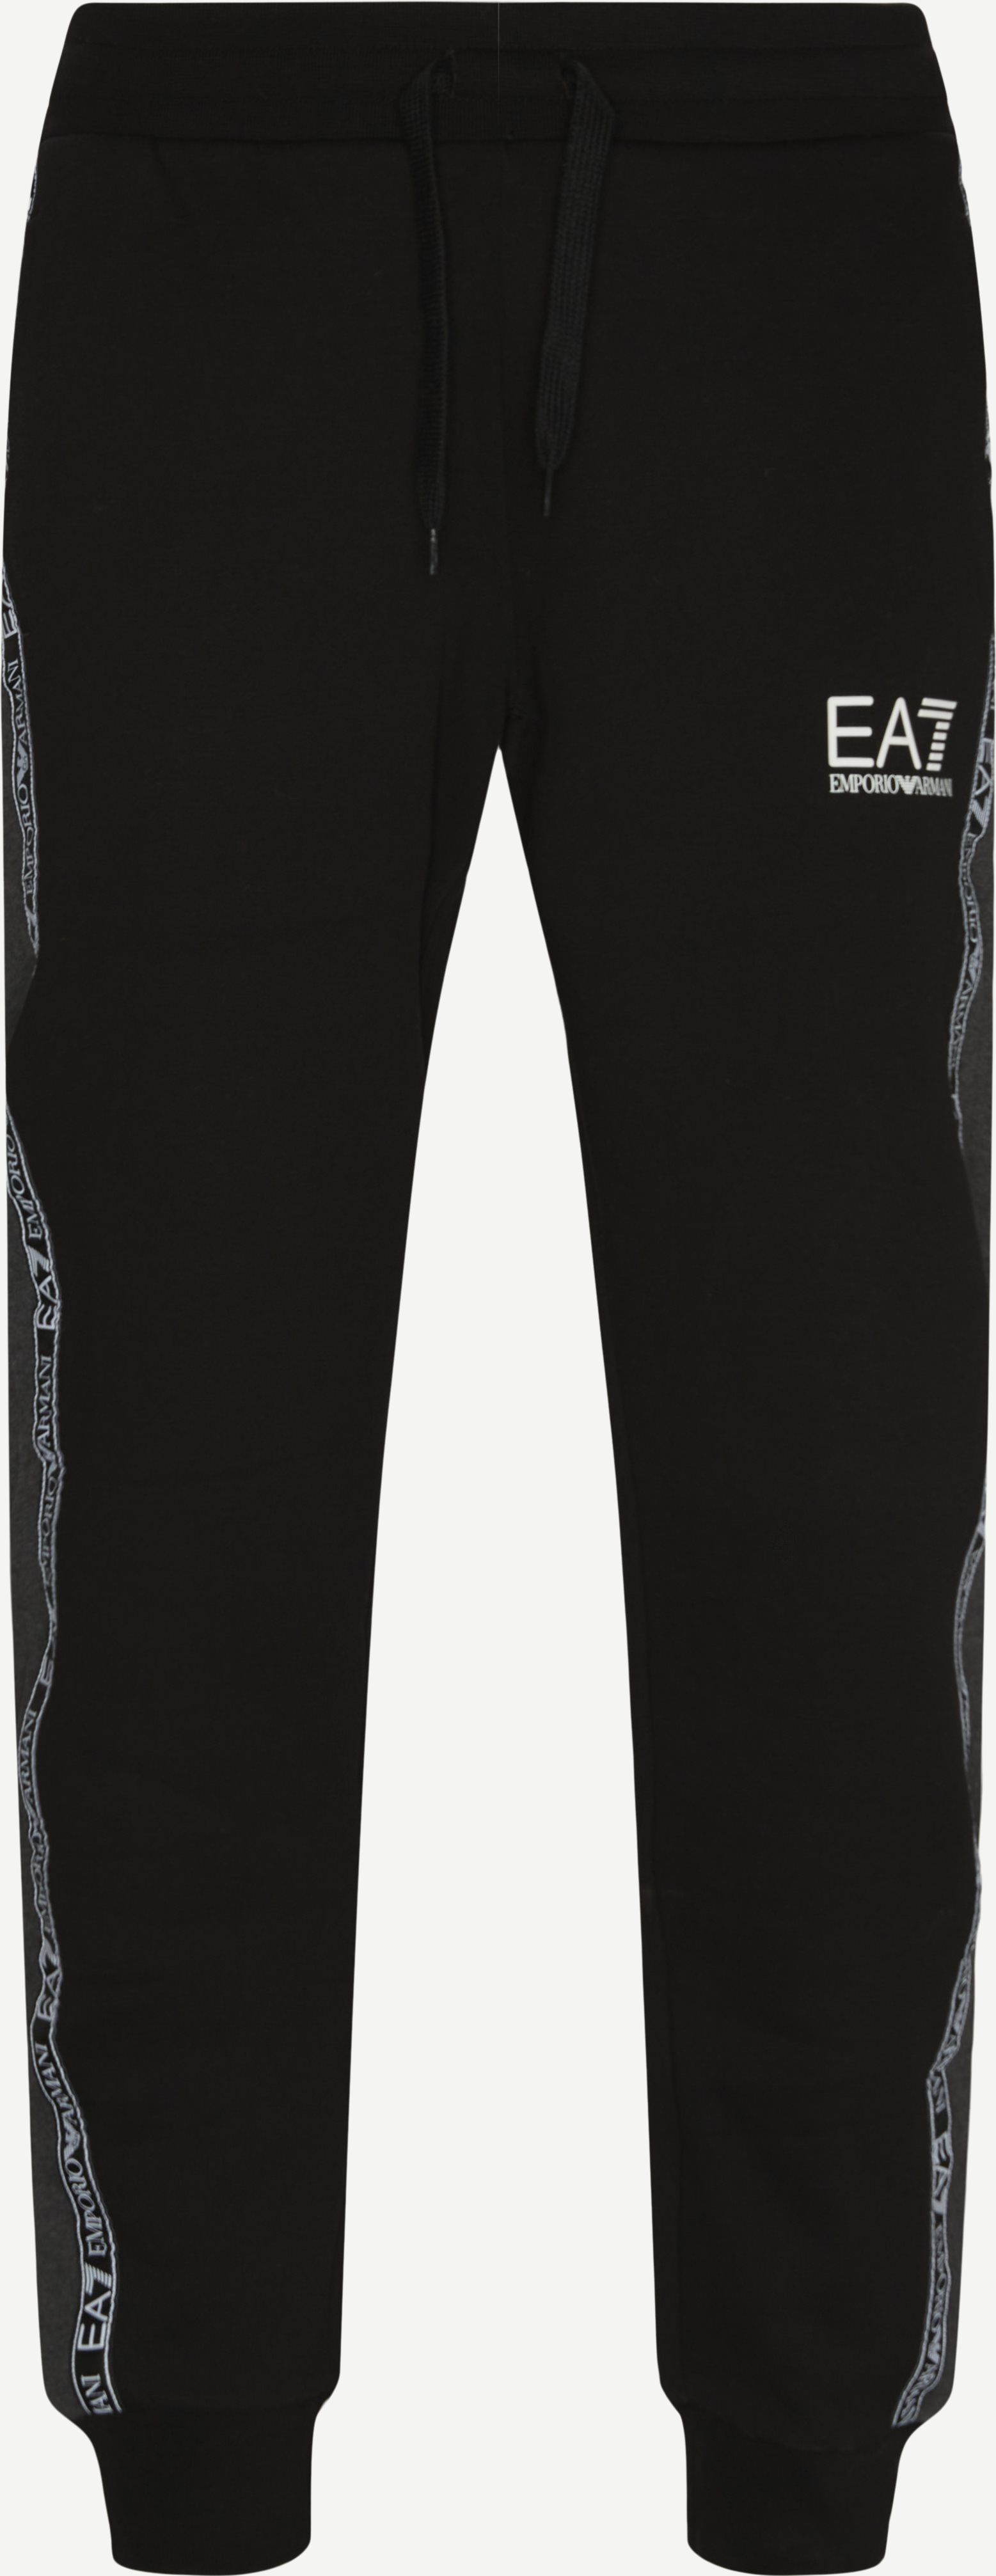 6KPV63 Sweatpants - Bukser - Regular fit - Sort